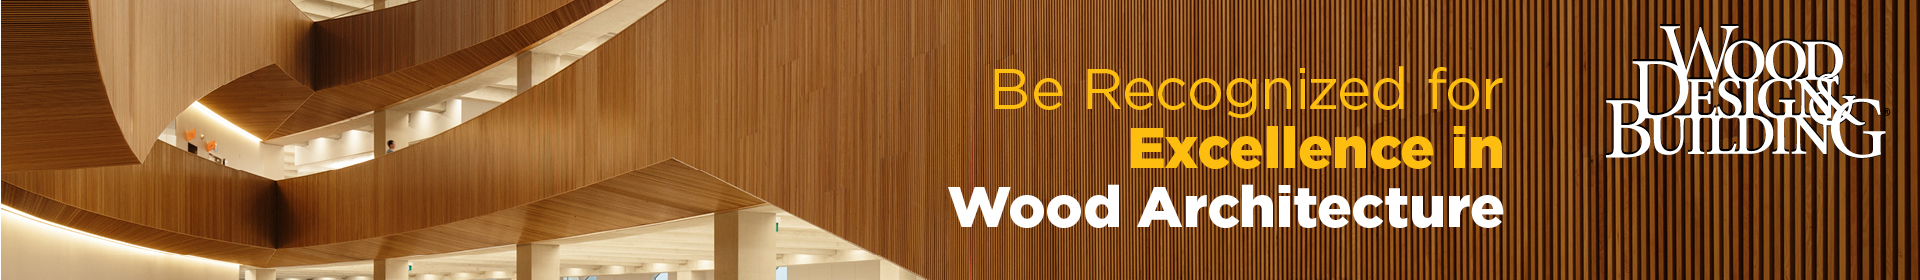 2021-22 Wood Design & Building Awards Event Banner